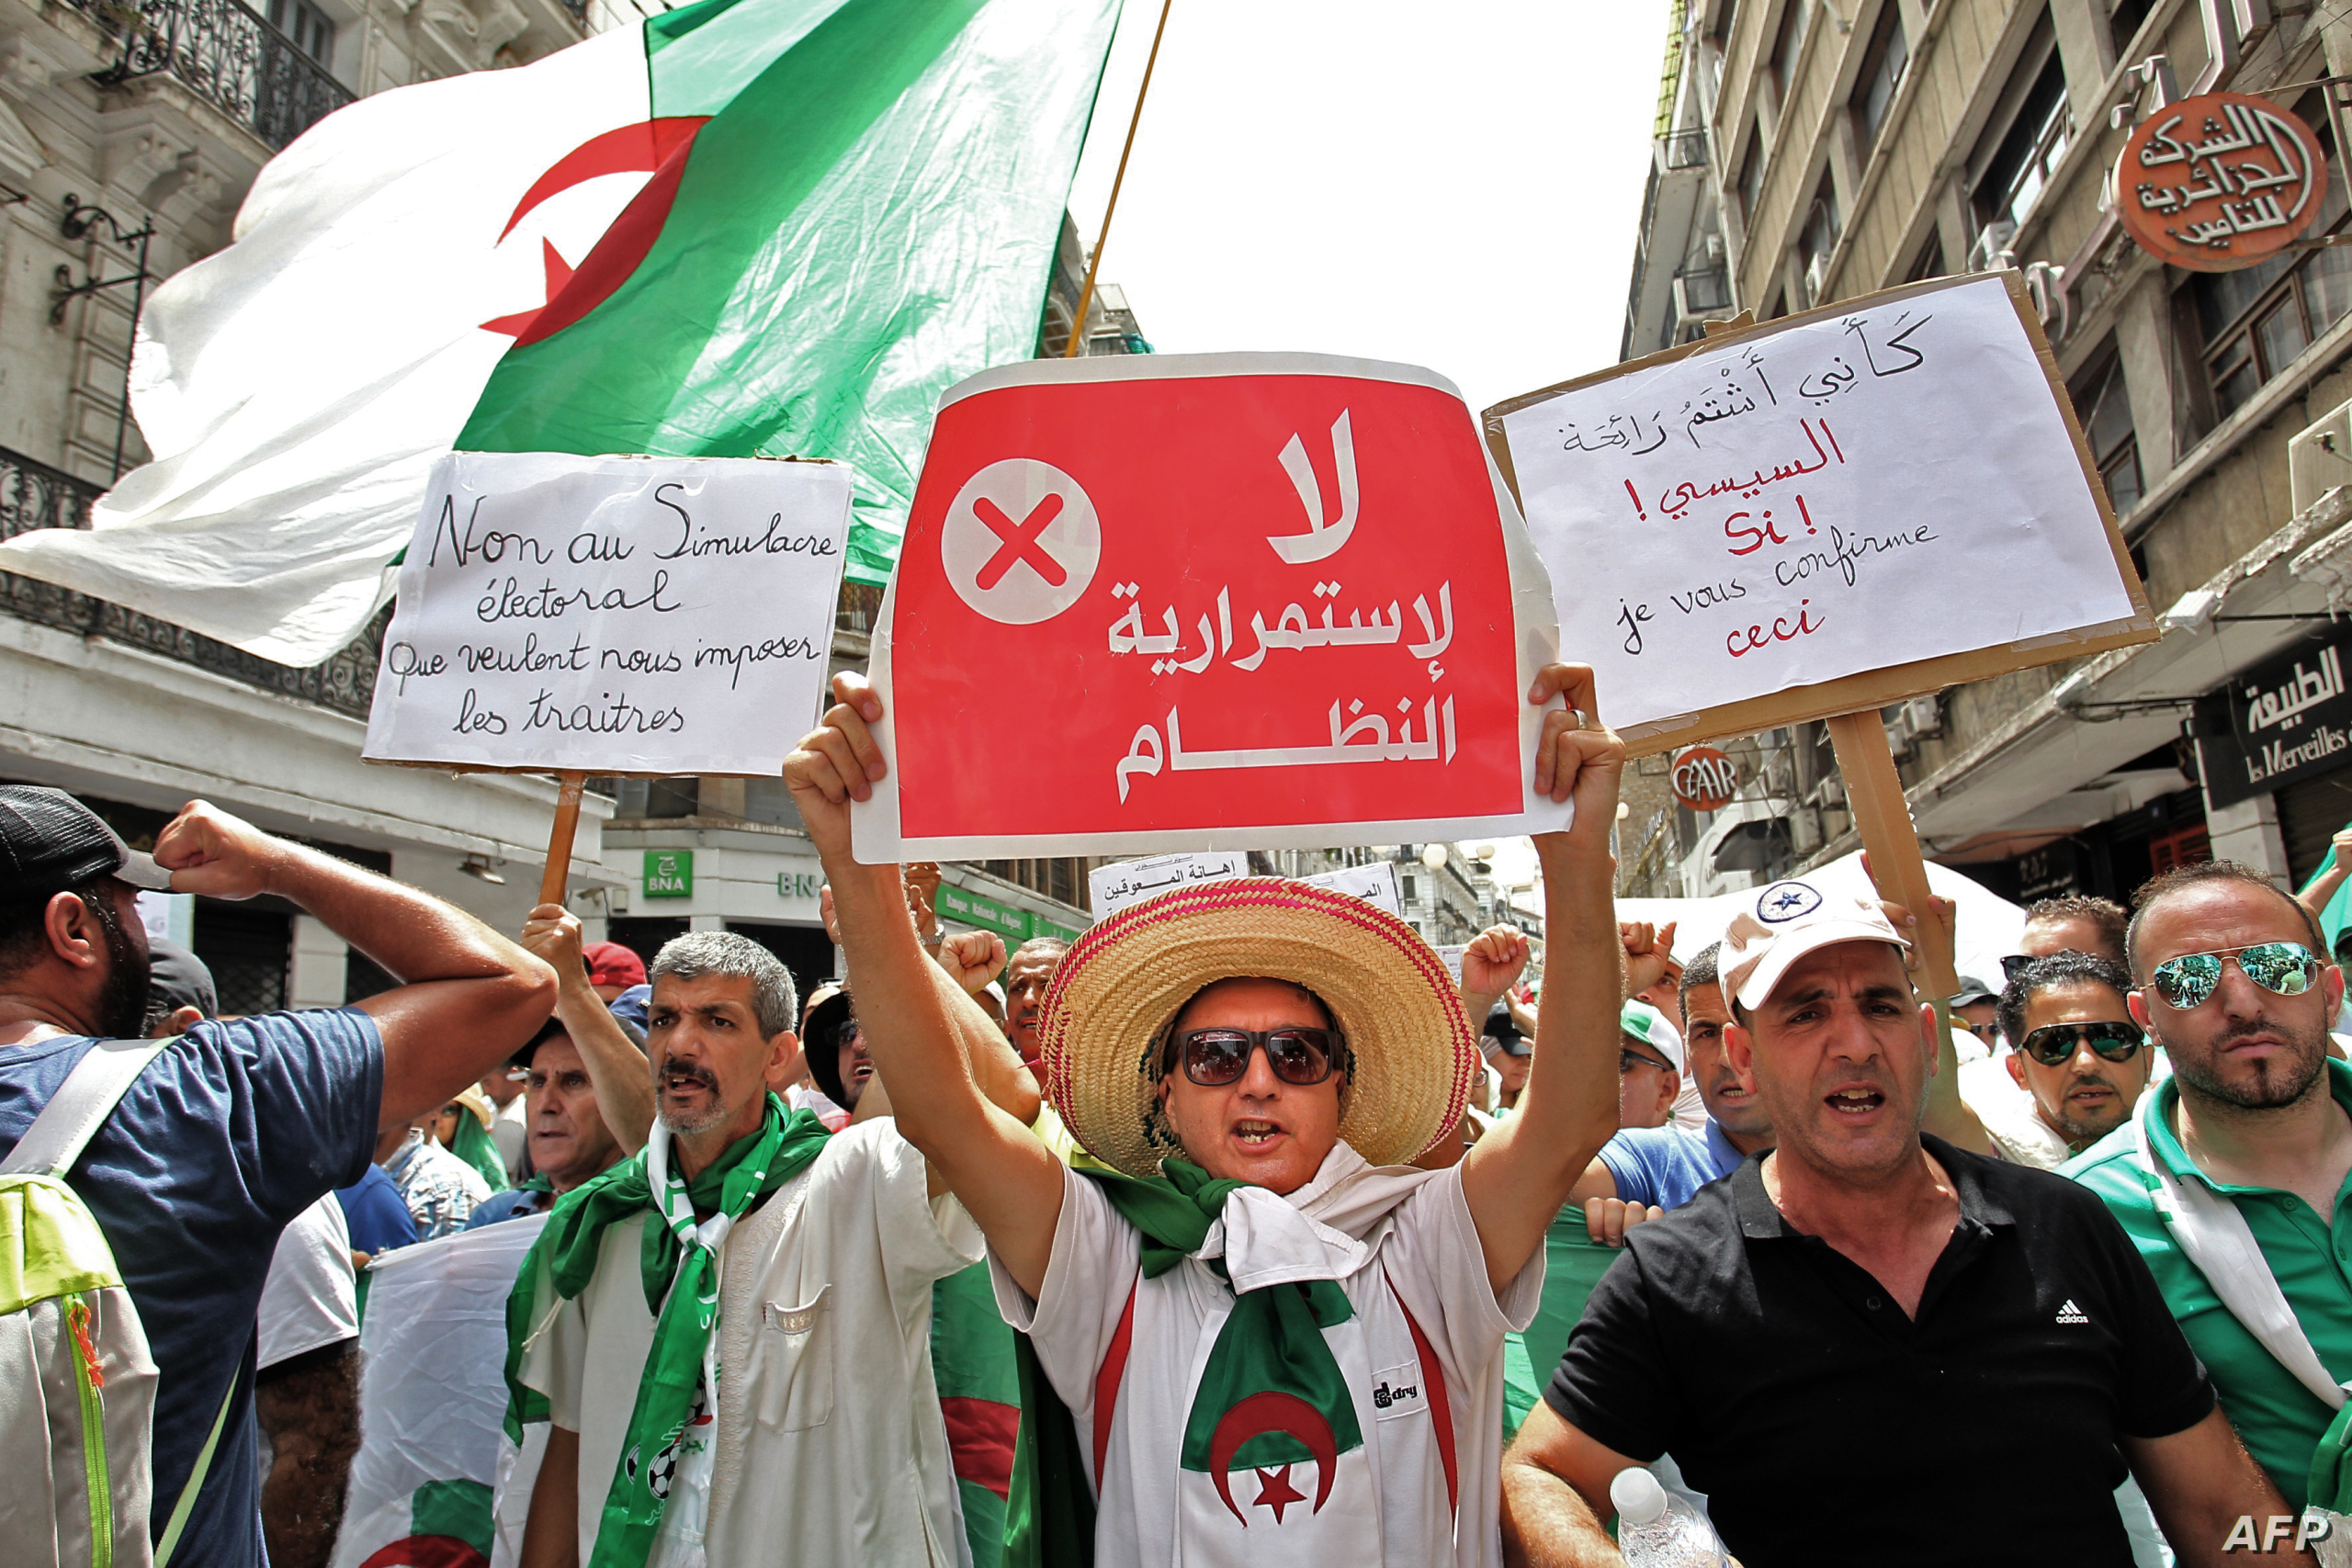 الإعلام الجزائري يصف المشاركة في الانتخابات المحلية ببلاده بـ”دون المستوى”